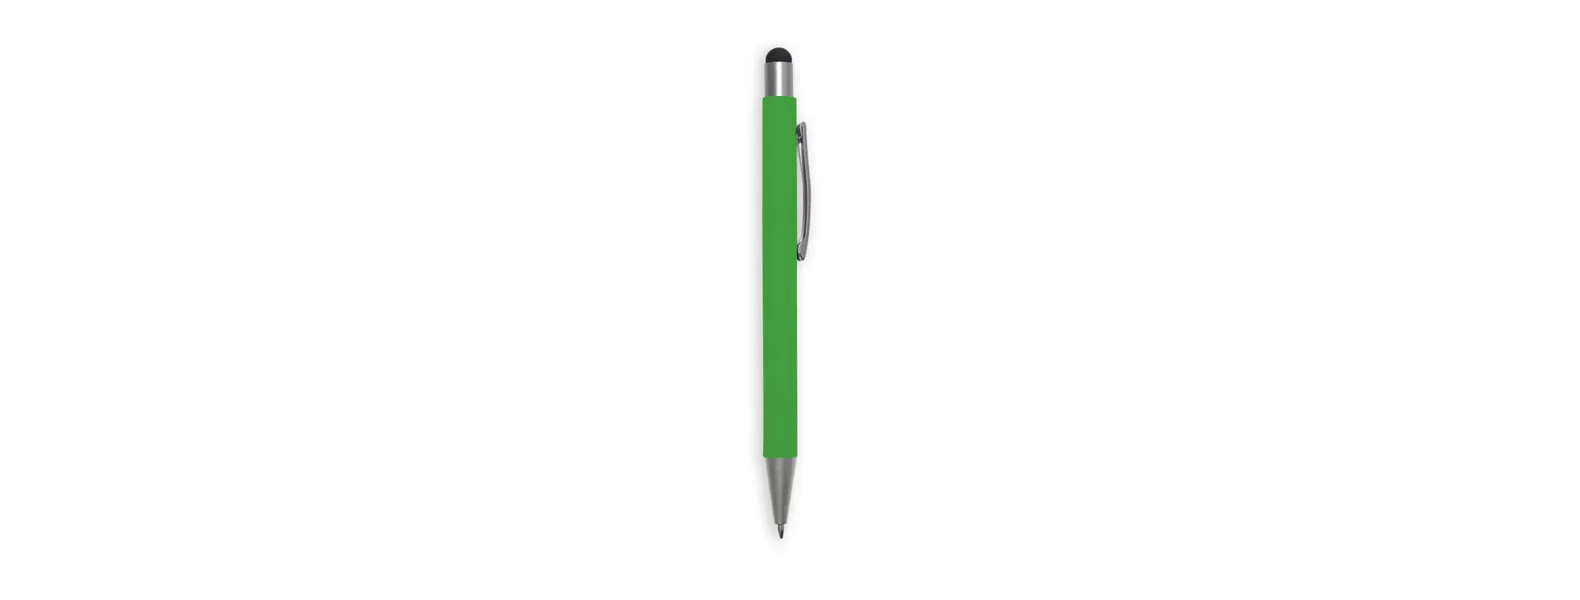 Caneta esferográfica em alumínio verde. Conta com acabamento fosco, clipe e ponteira touch em silicone preto. Carga esferográfica azul acionada por um click na extremidade da caneta.